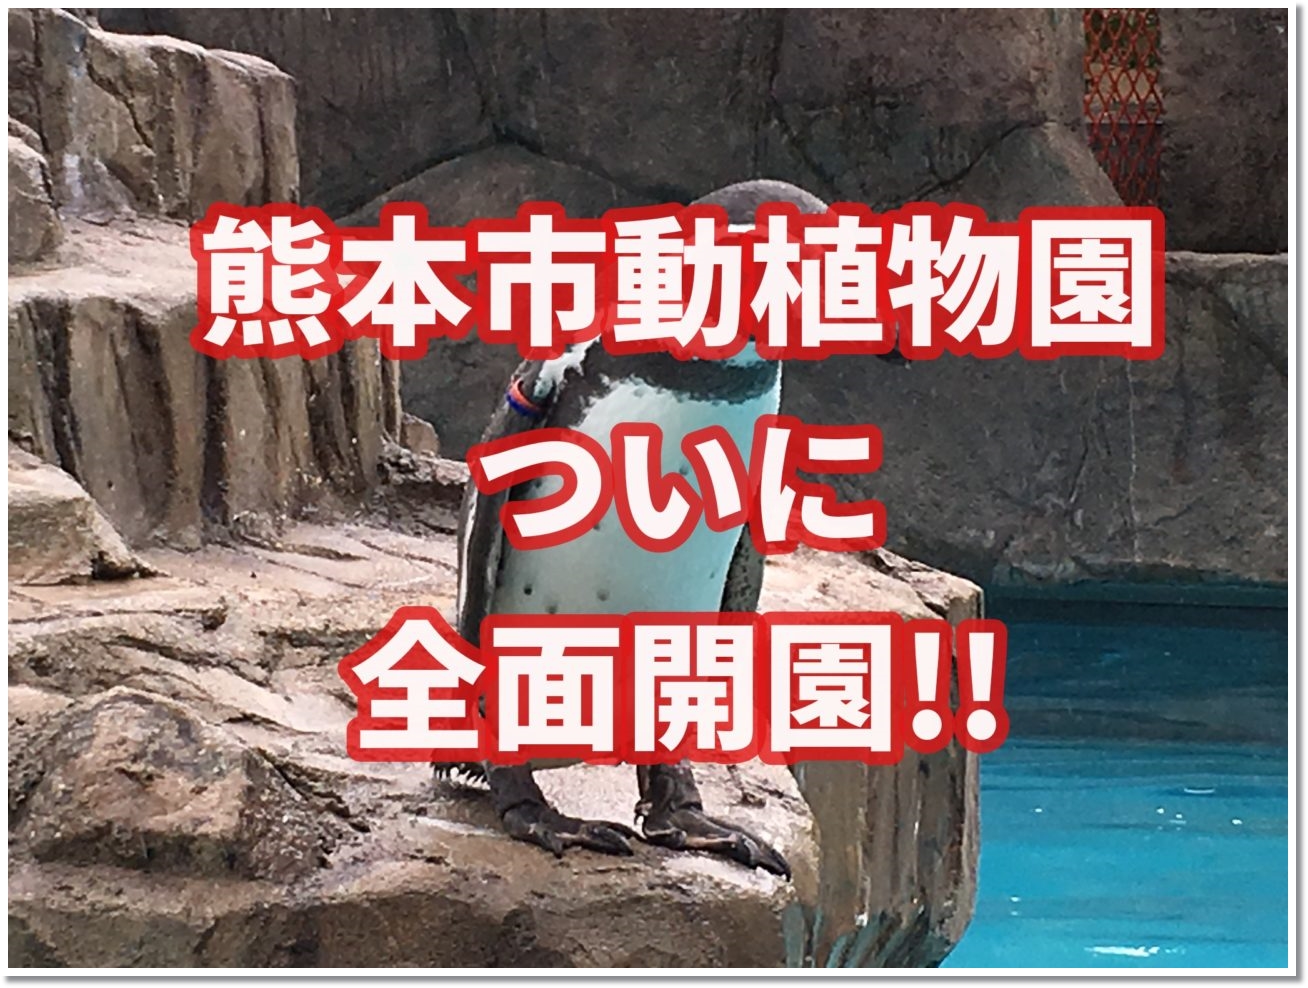 熊本市動植物園がついに全面開園 駐車場と入園料をお得にしよう 子連れ旅行を楽しむ鉄板ブログ もう国内旅行は迷わせない